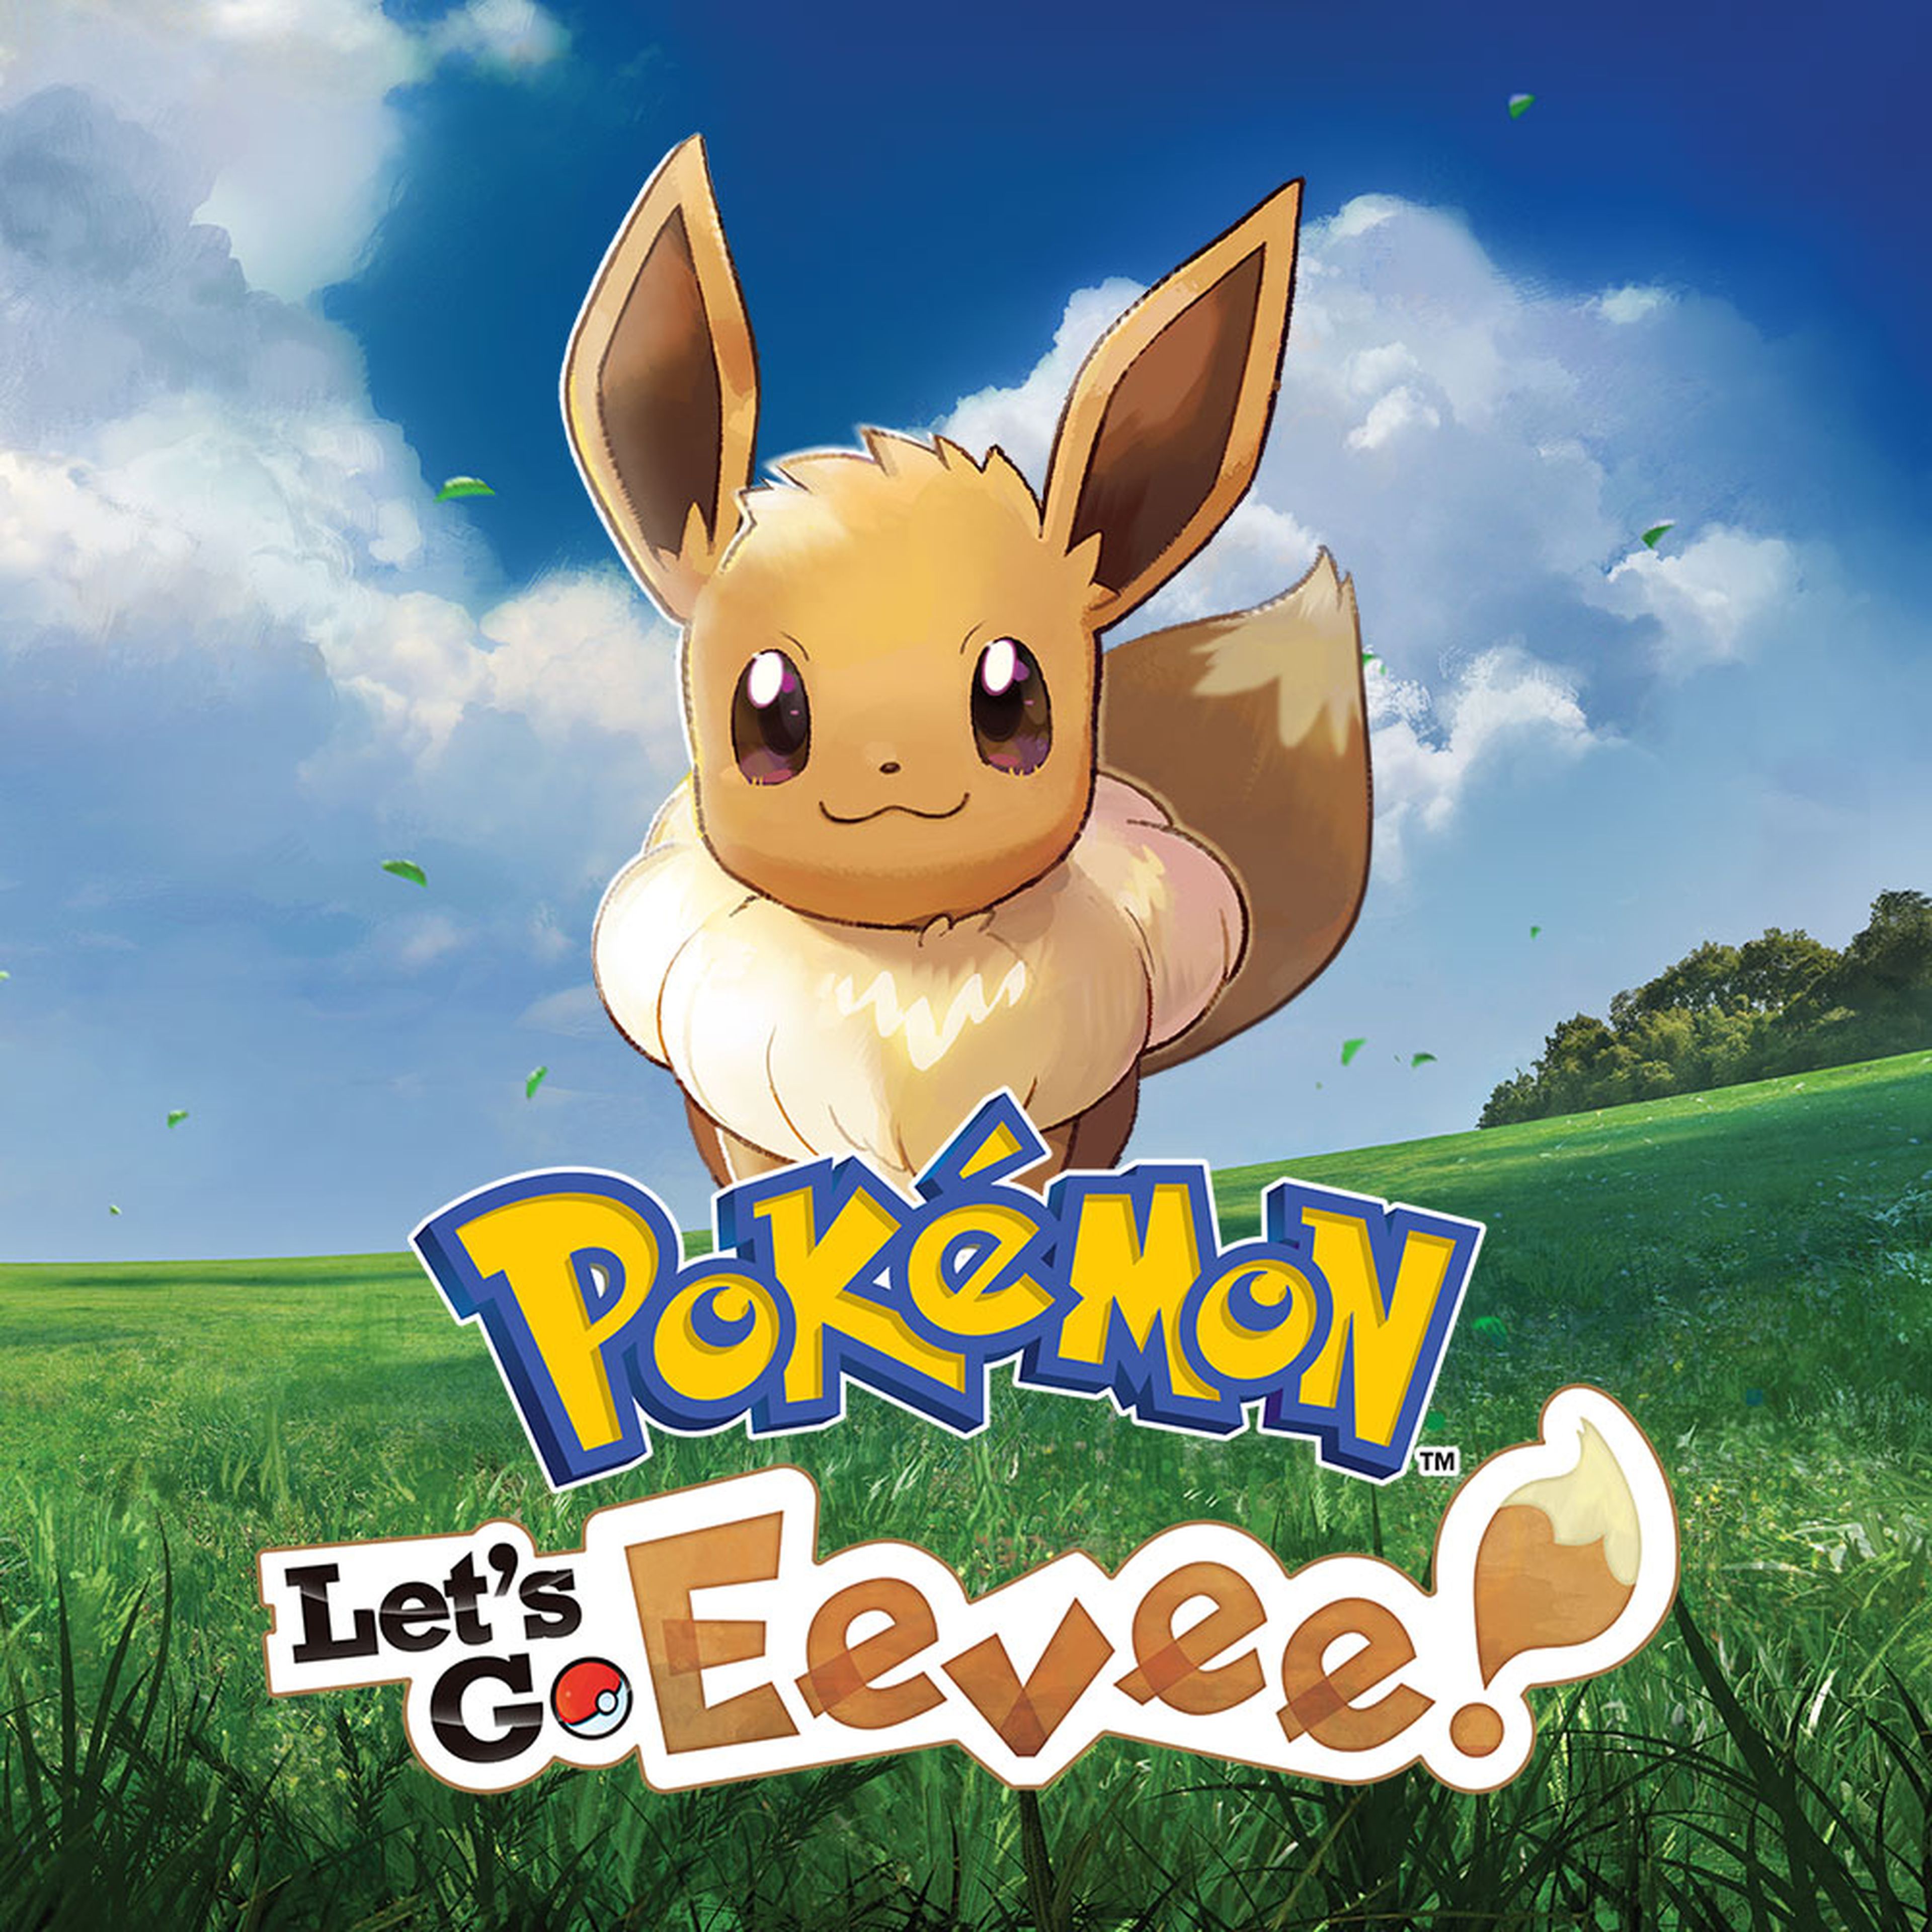 Pokémon: Let's Go, eevee! cover